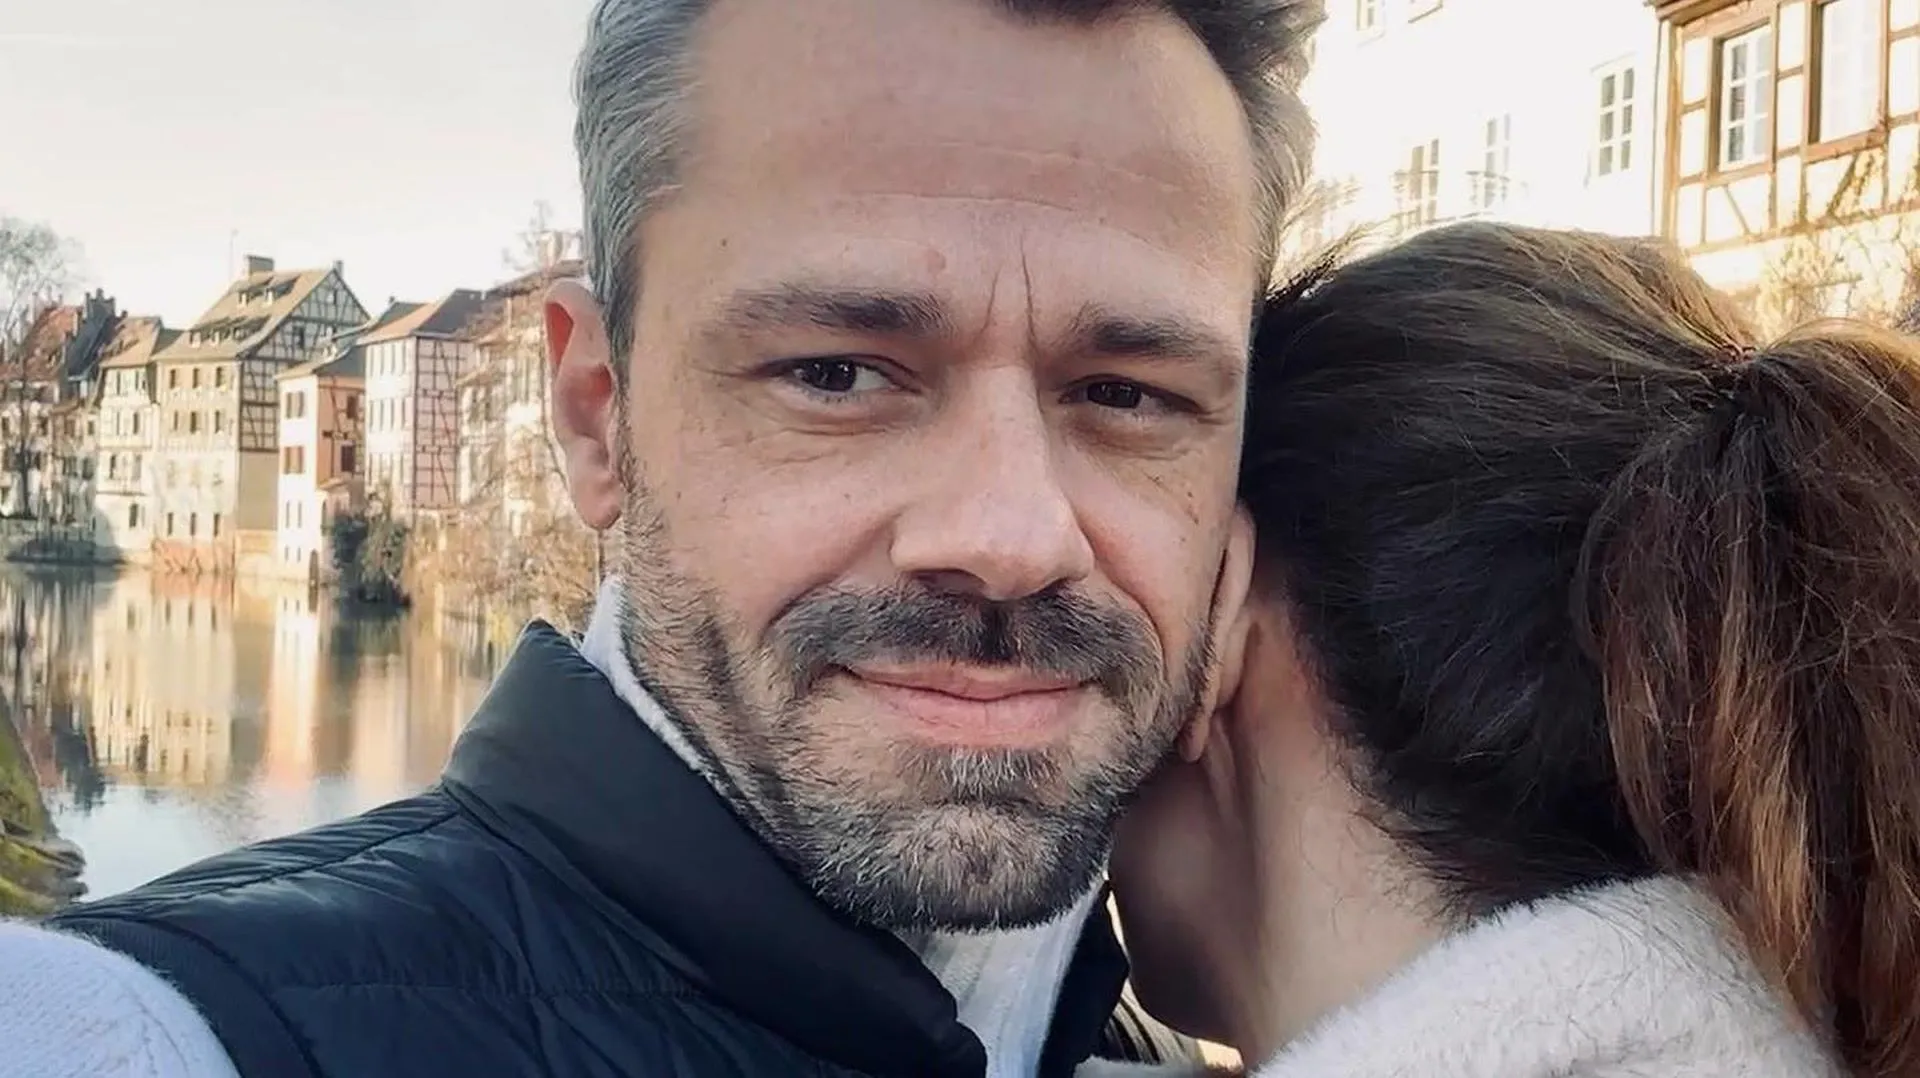 Sven Waasner et Viola Wedekind : Jolie photo de couple après un choc à l'hôpital